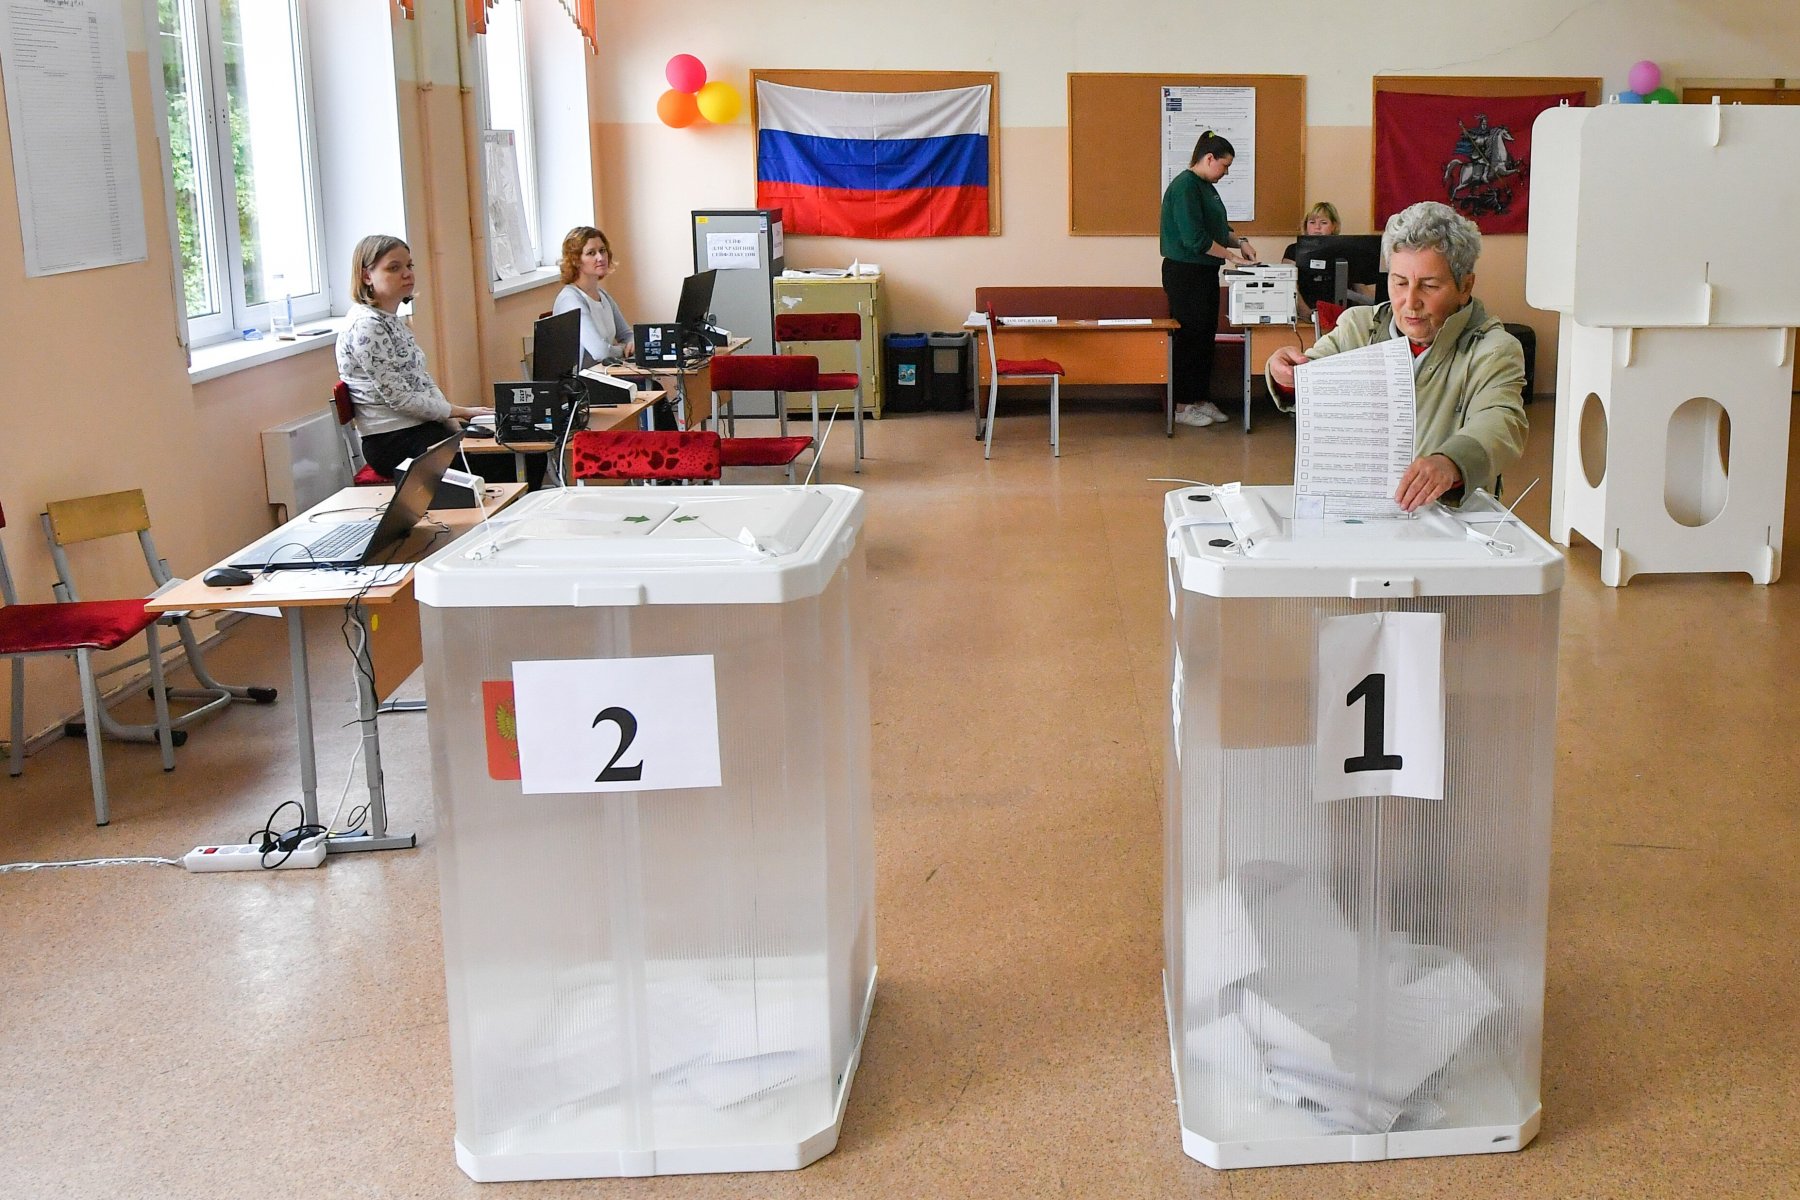 Около 300 тысяч избирателей проголосовали на выборах муниципальных депутатов в Подмосковье